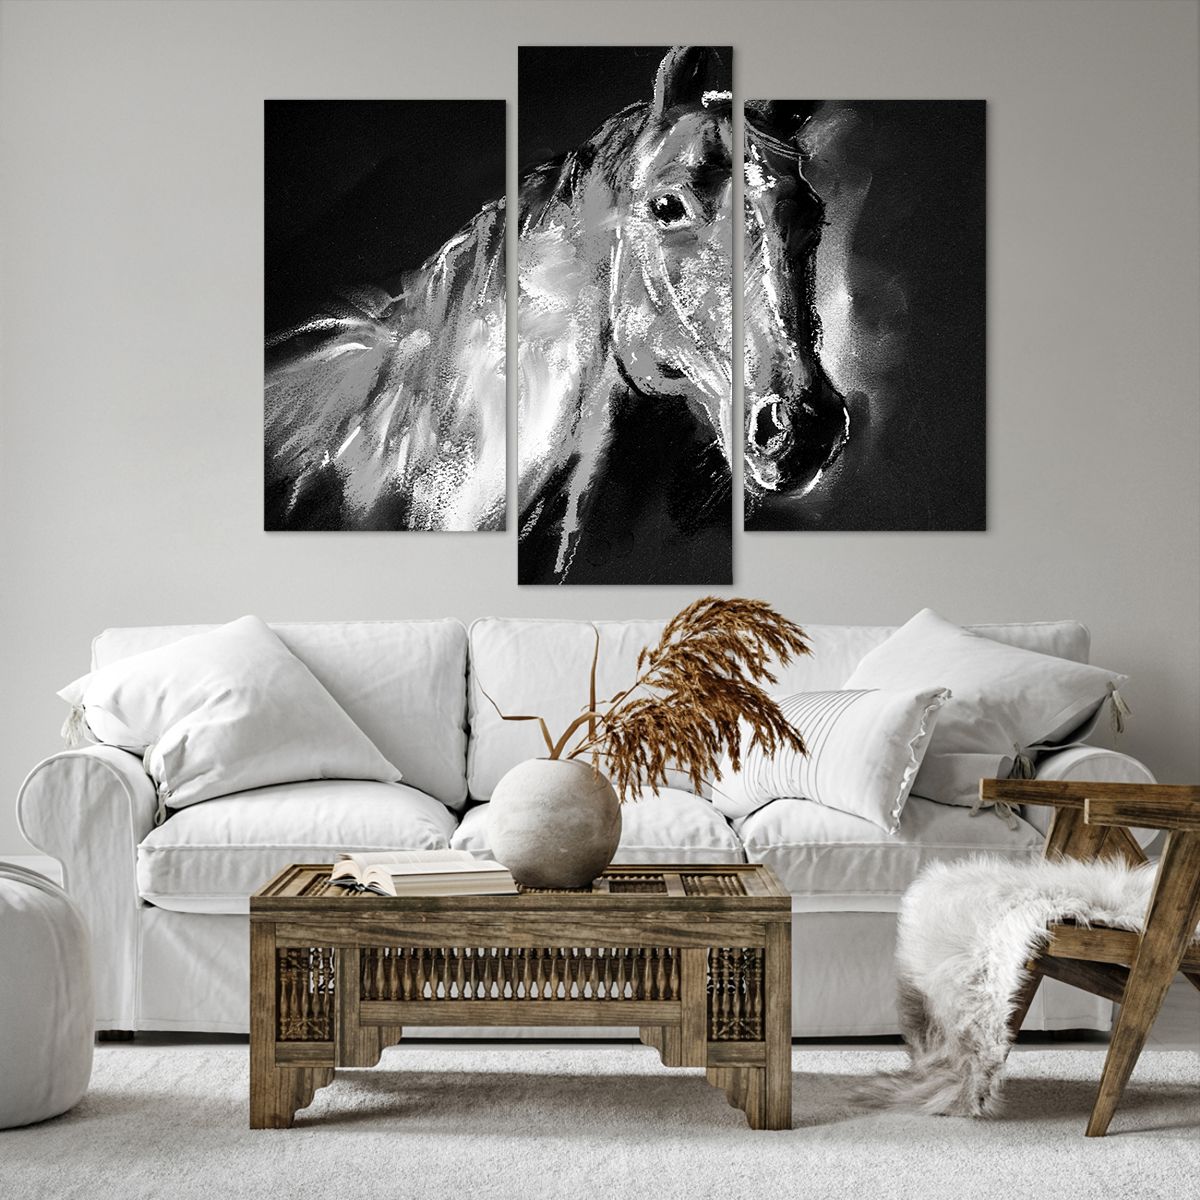 Bild auf Leinwand Tiere, Bild auf Leinwand Pferd, Bild auf Leinwand Stute, Bild auf Leinwand Kultur, Bild auf Leinwand Kunst